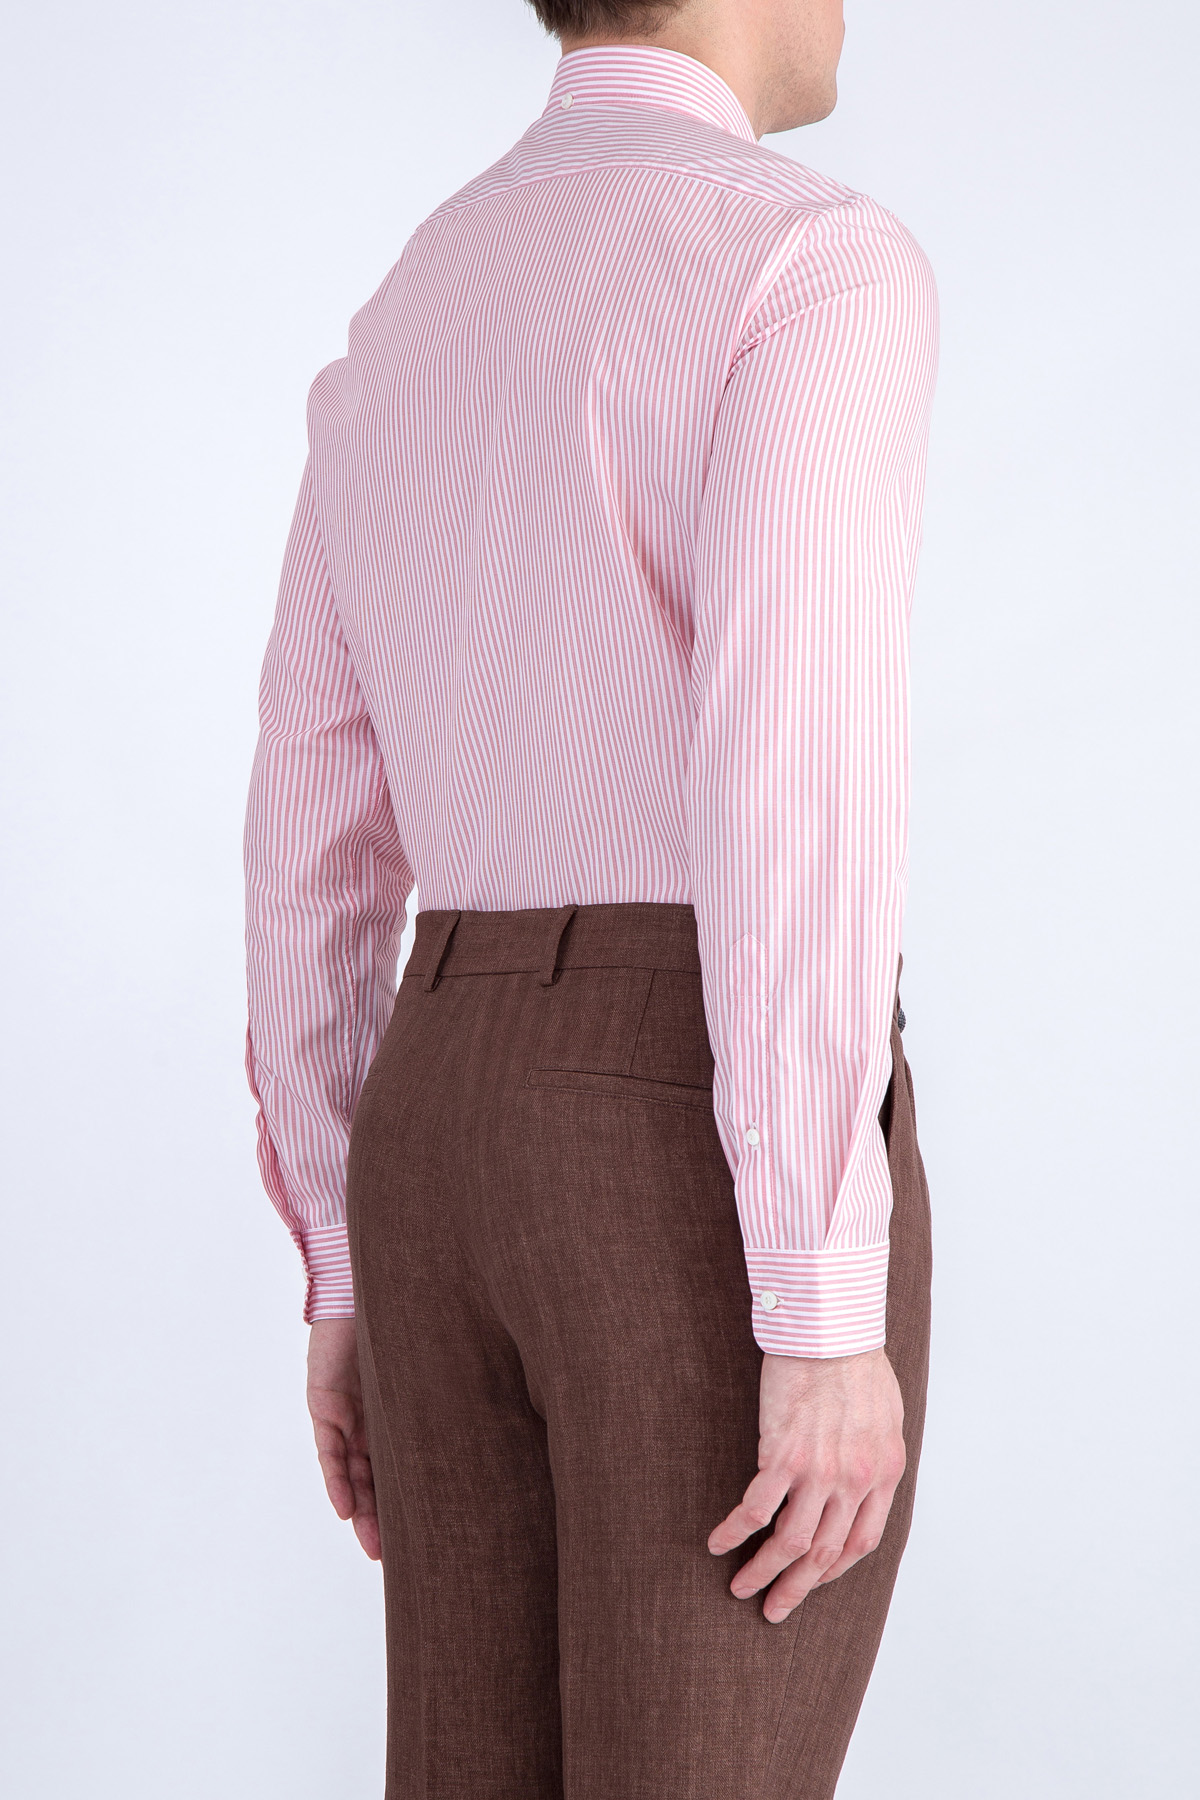 Хлопковая рубашка с узором в виде вертикальных полос розового цвета BRUNELLO CUCINELLI, размер 48 - фото 4